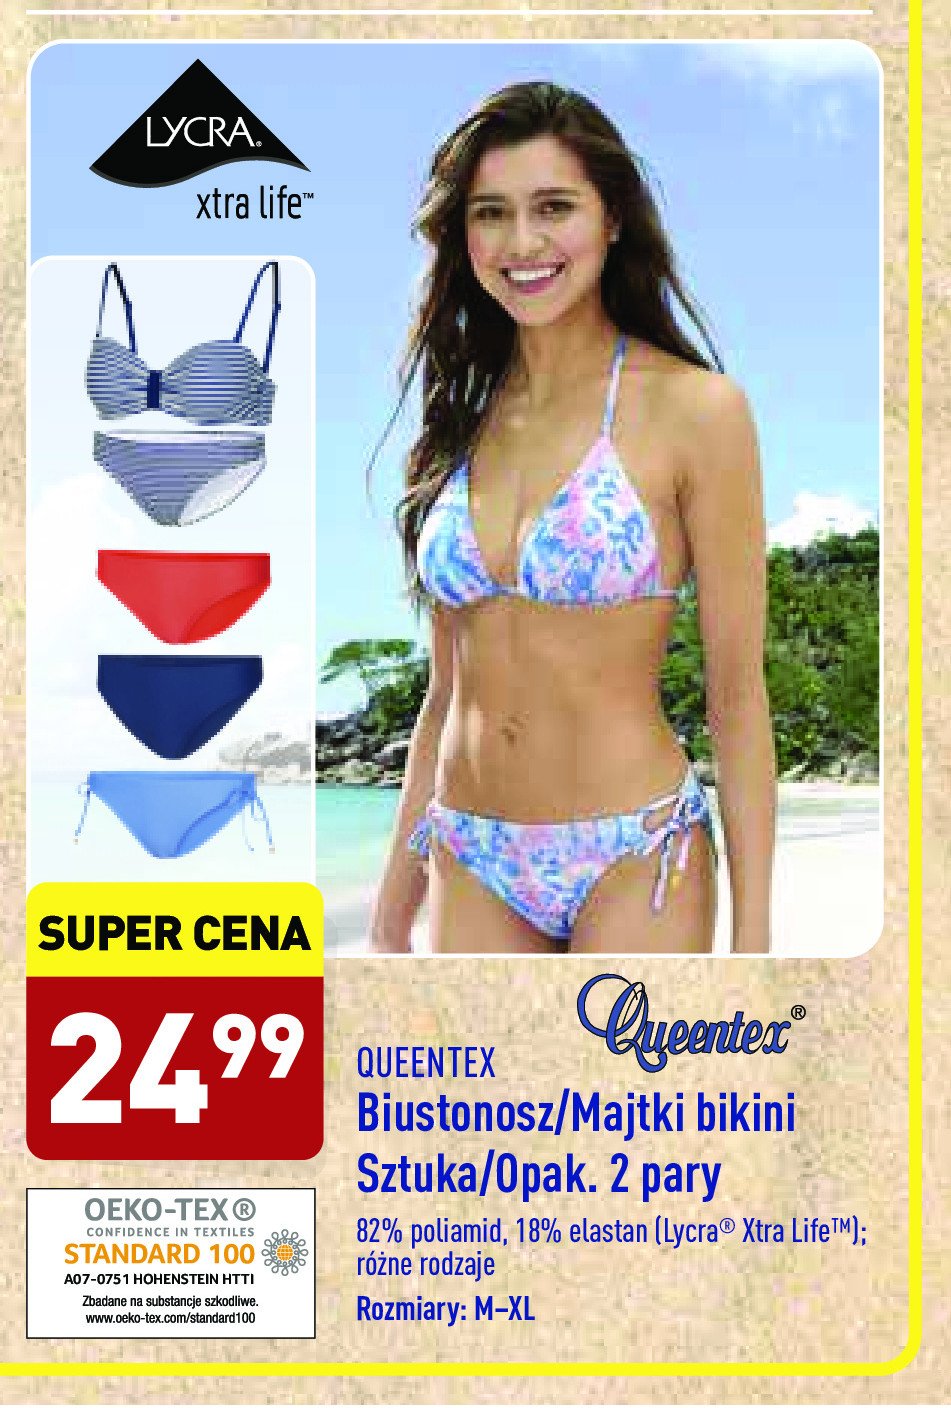 Bikini damskie 36-40 Queentex promocja